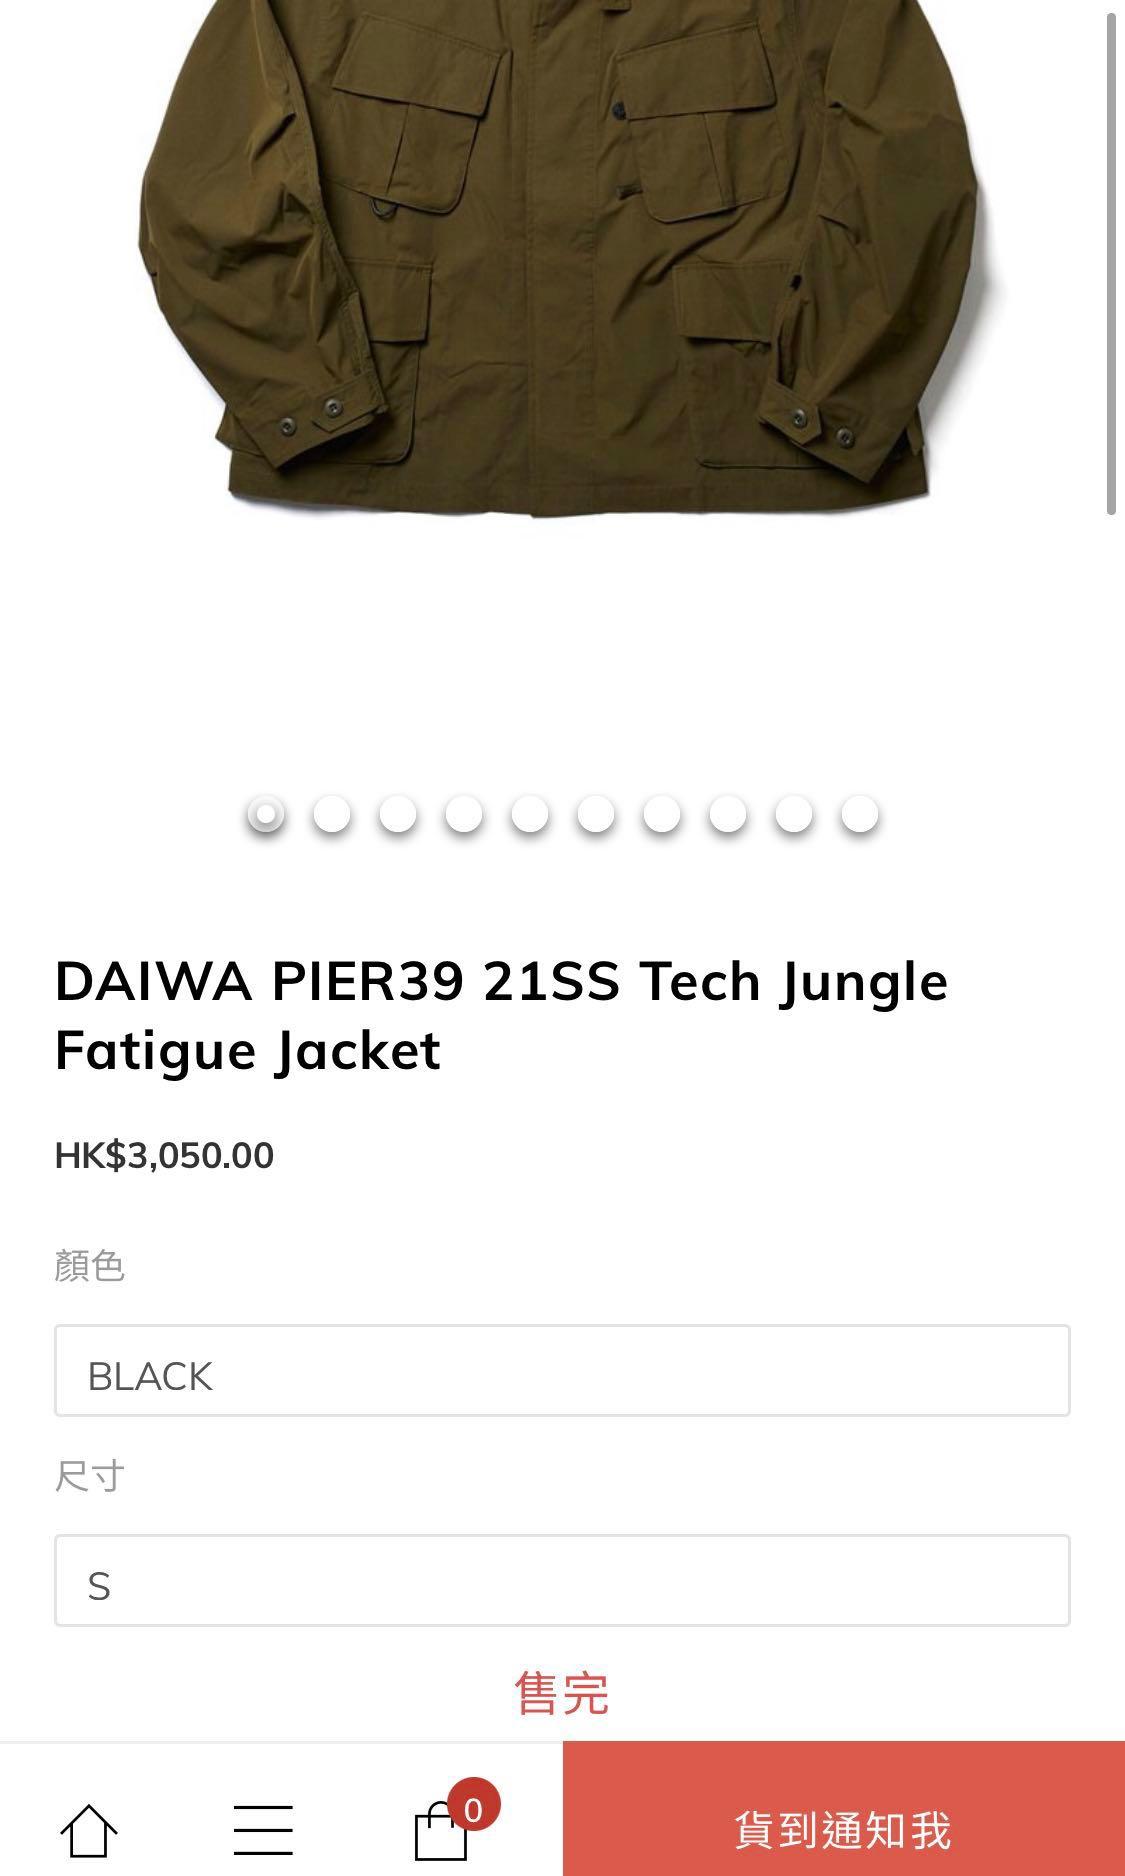 全新日本DAIWA PIER39 21ss TECH JUNGLE FATIGUE JACKET, 男裝, 外套及 